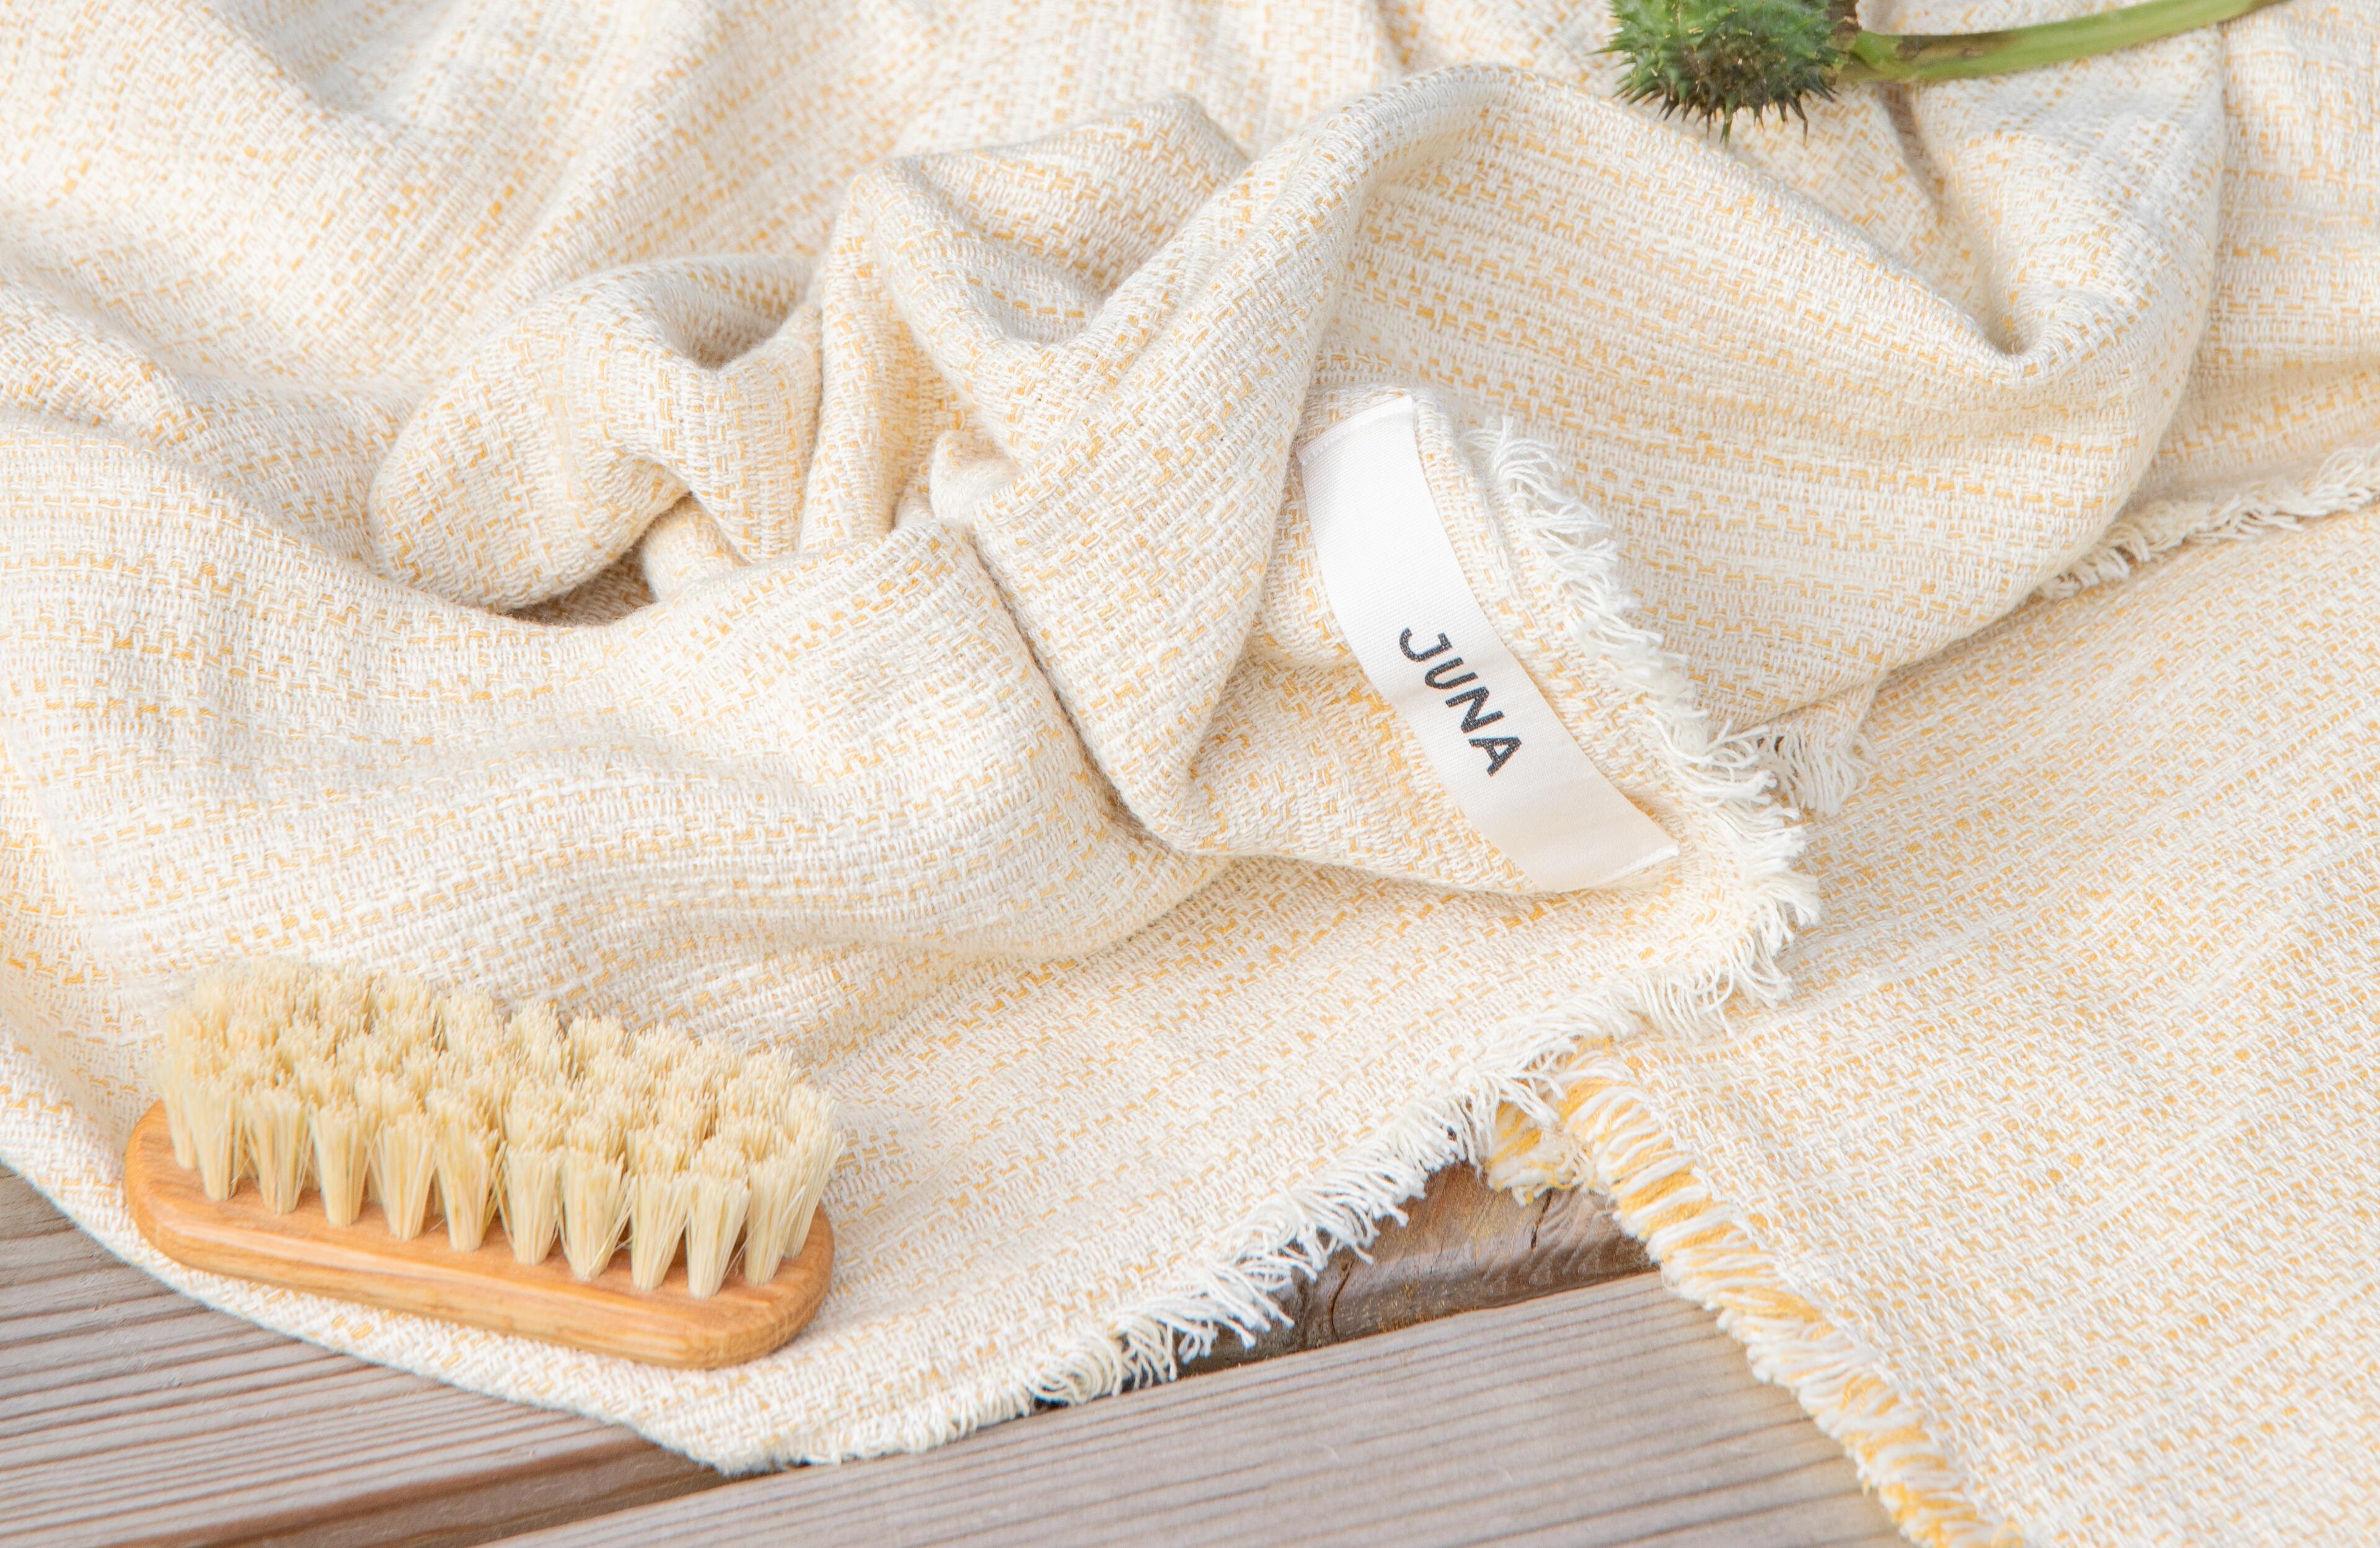  Håndklær fra JUNA. Knallgult håndkle for strand og hjem